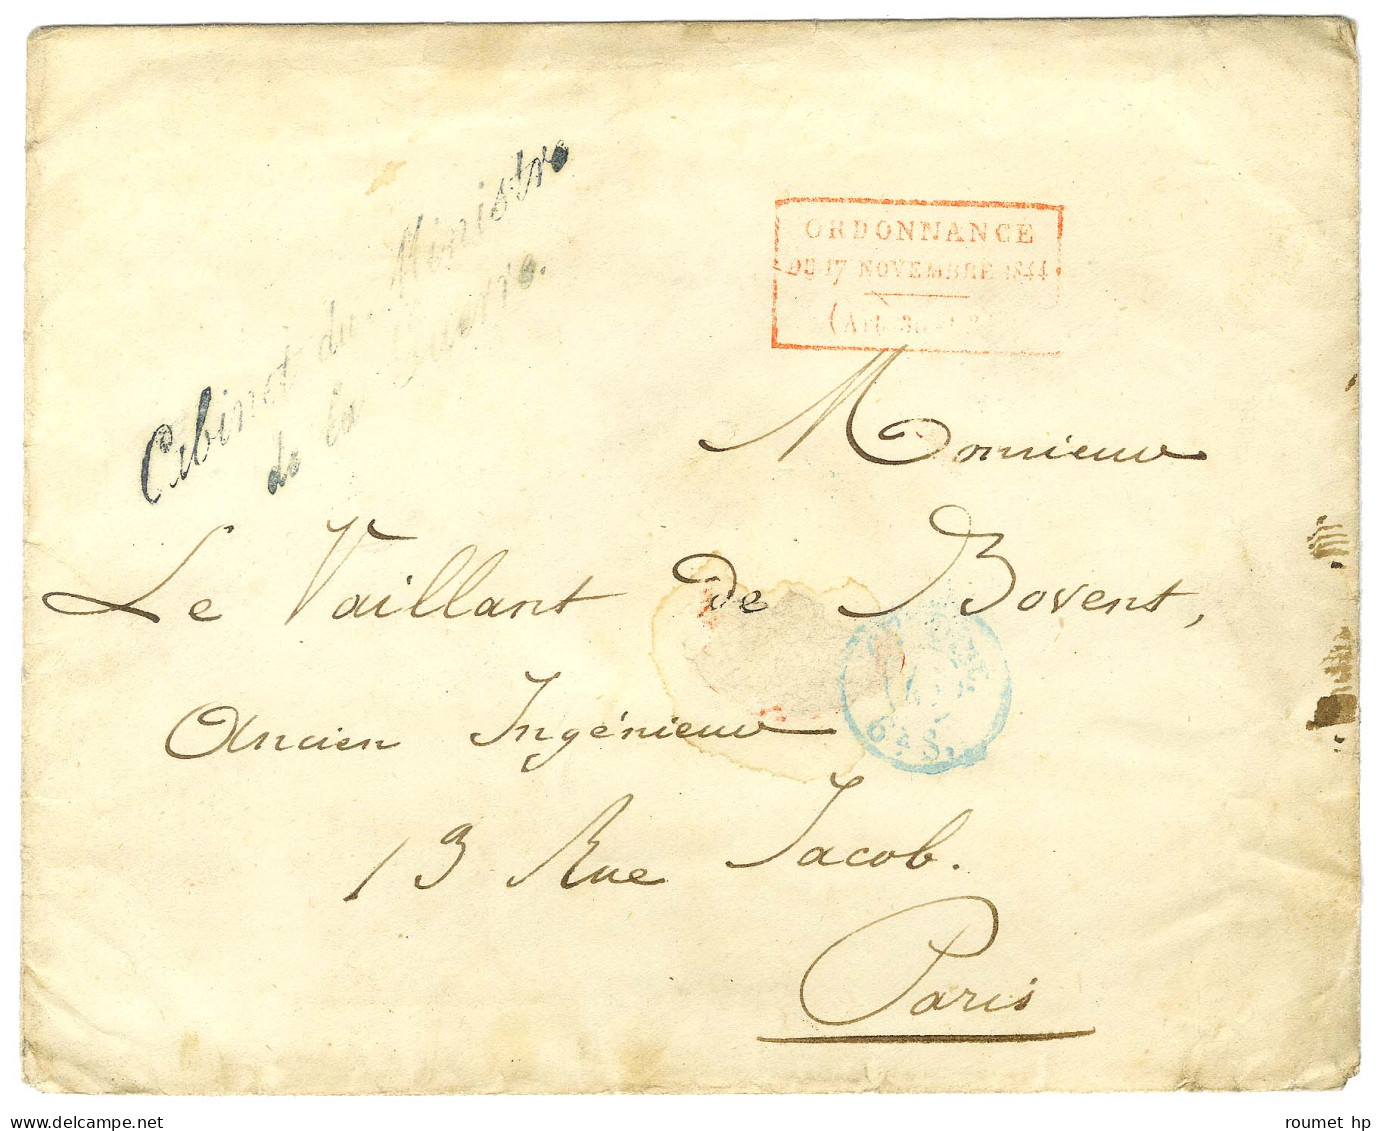 Enveloppe Sans Texte Datée 1825 Adressée à Paris. Au Recto, Cachet Rouge Encadrée De L'Ordonnance. - TB. - Civil Frank Covers